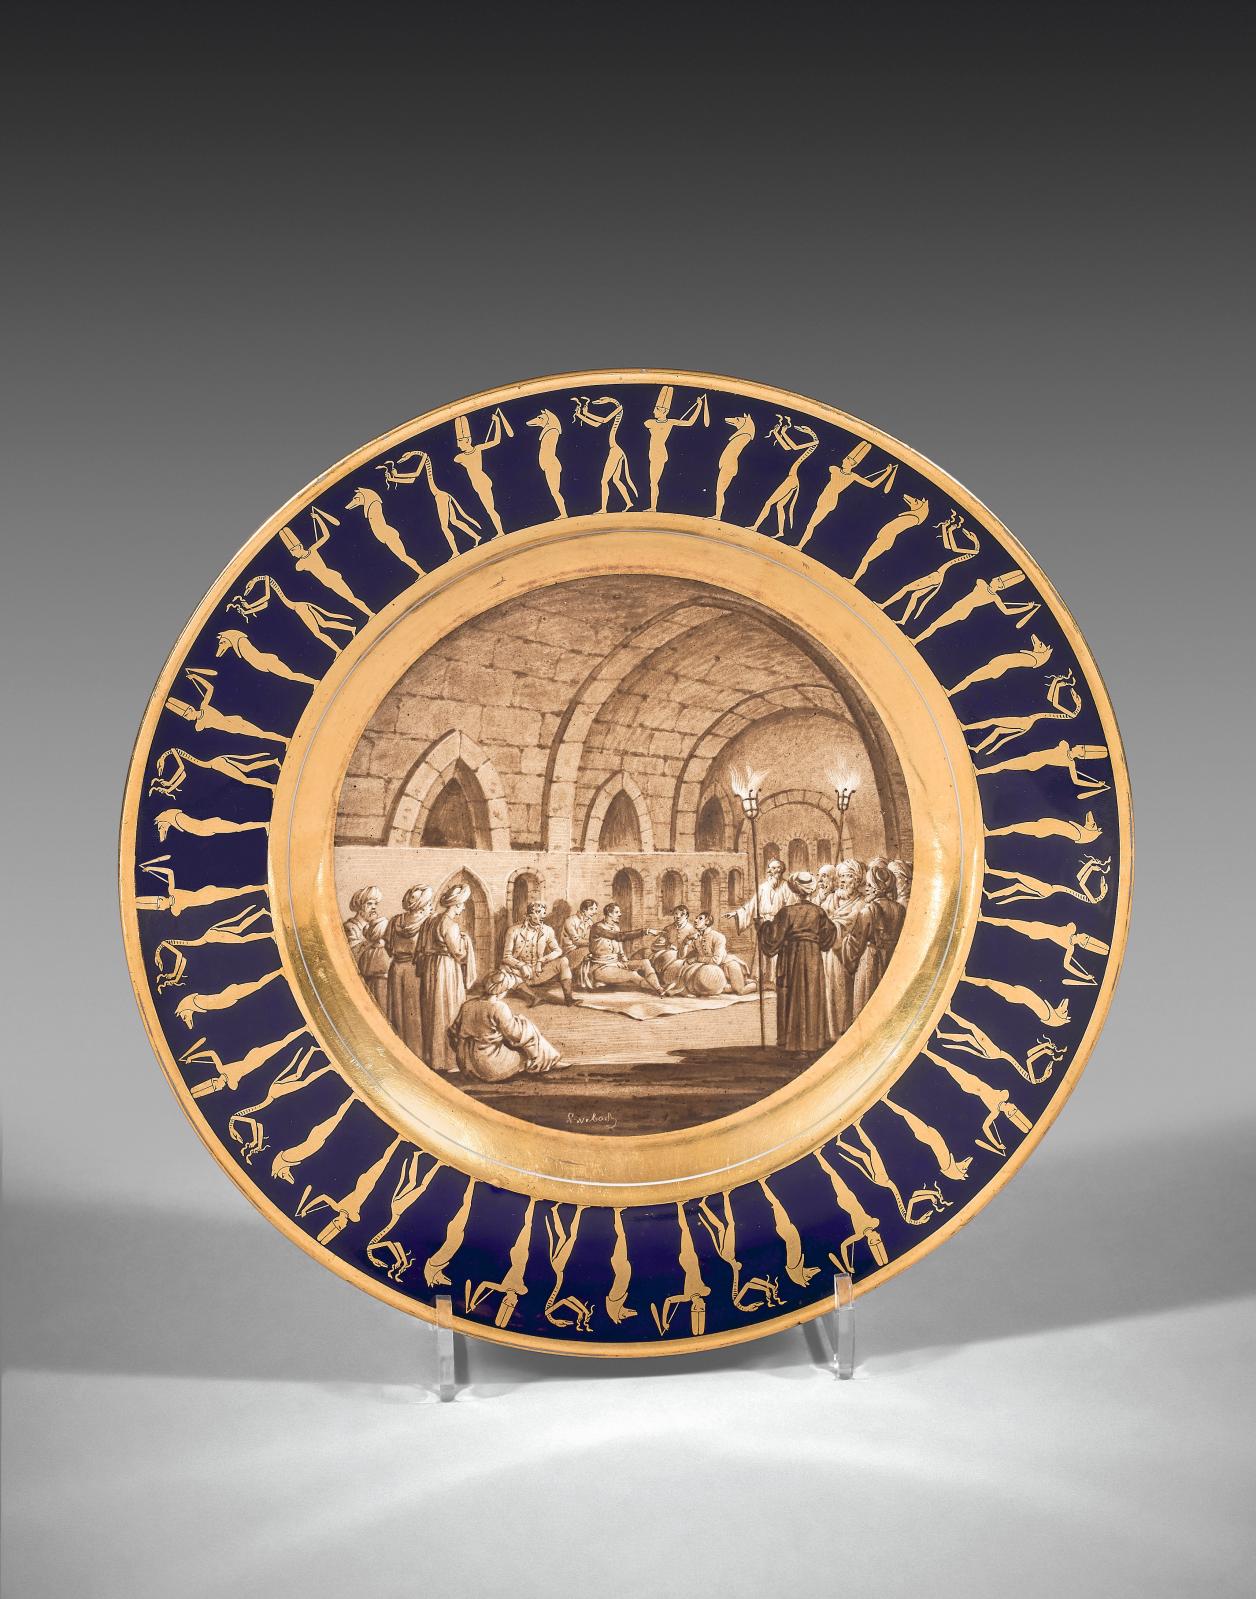 Époque Empire, Sèvres, assiette en porcelaine du service égyptien légendée « Quartier général dans les tombeaux près de Nagadi », signée «